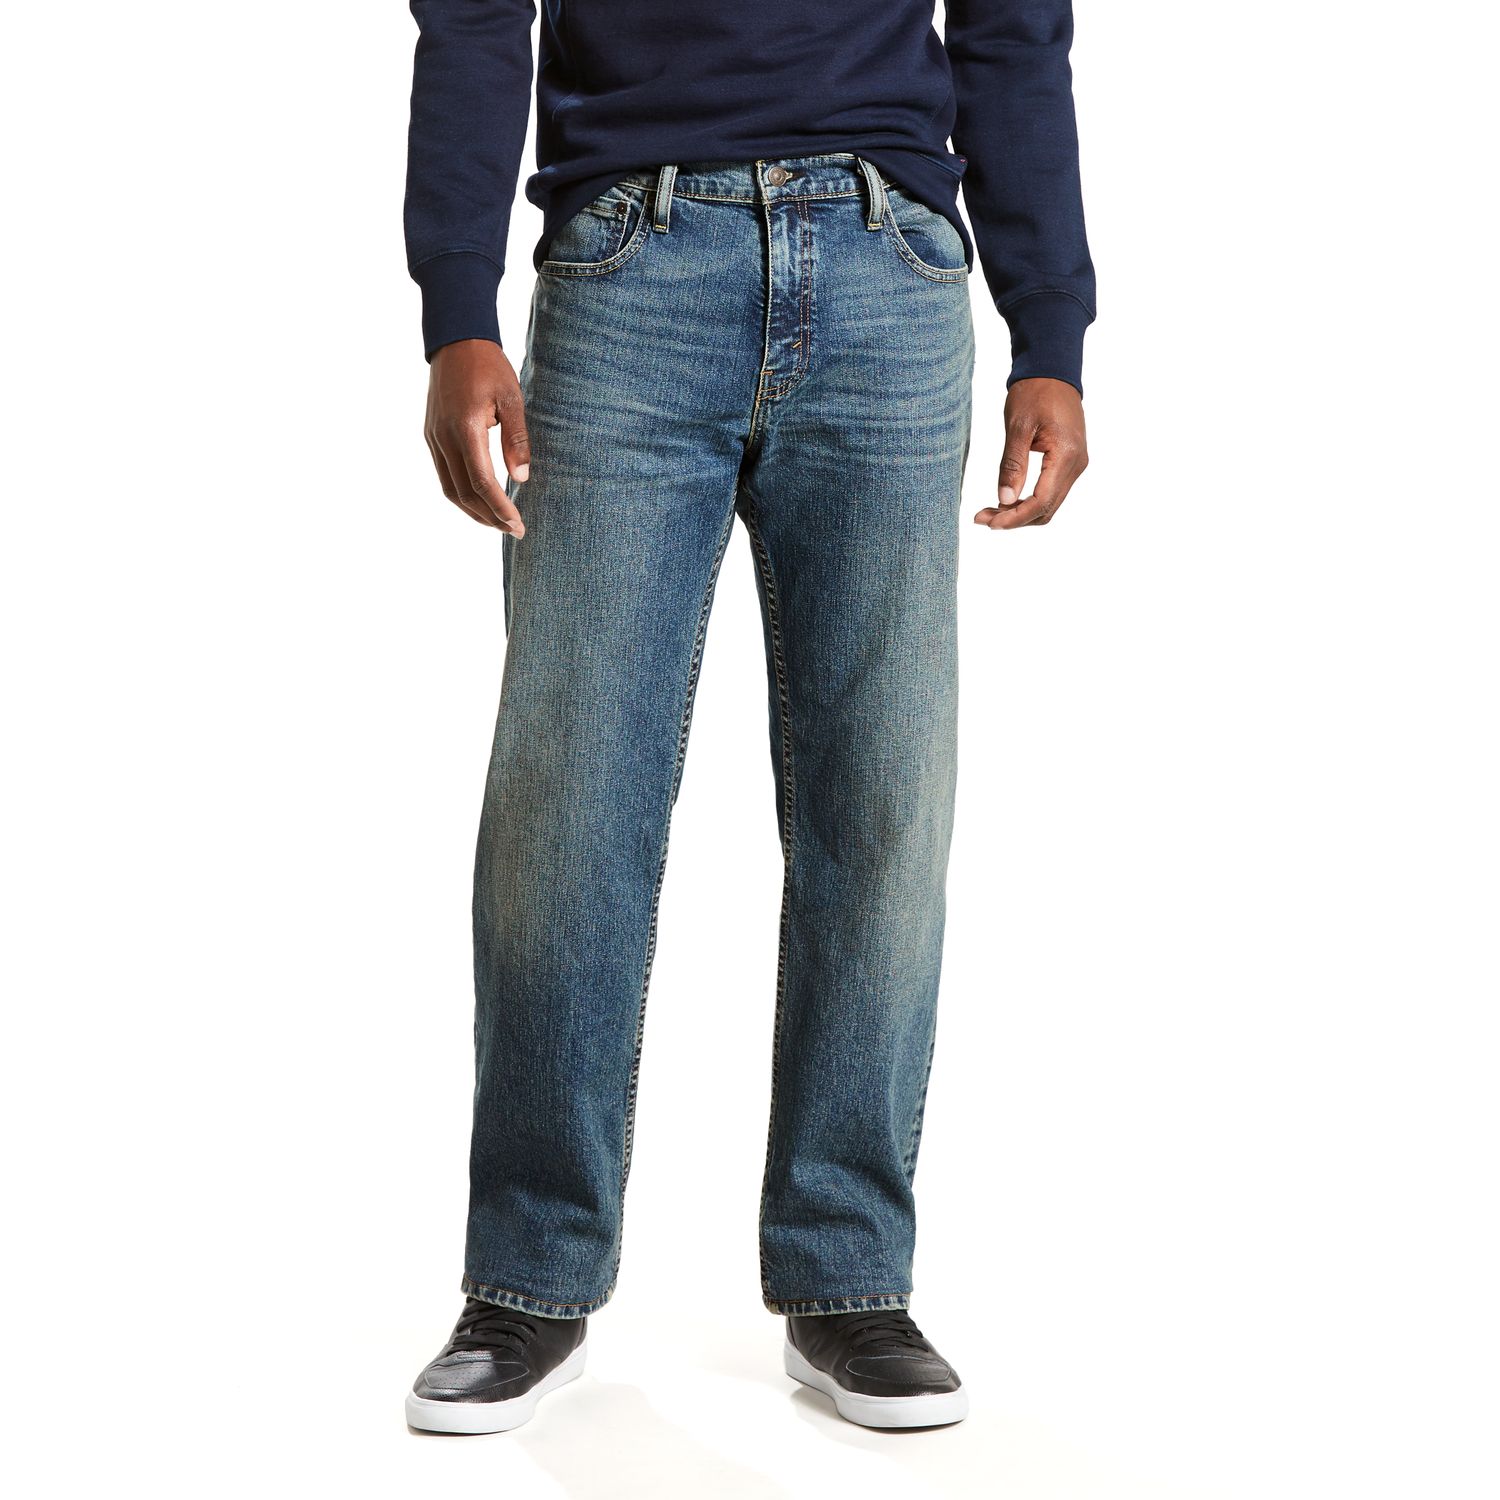 levis 569 jeans kohls